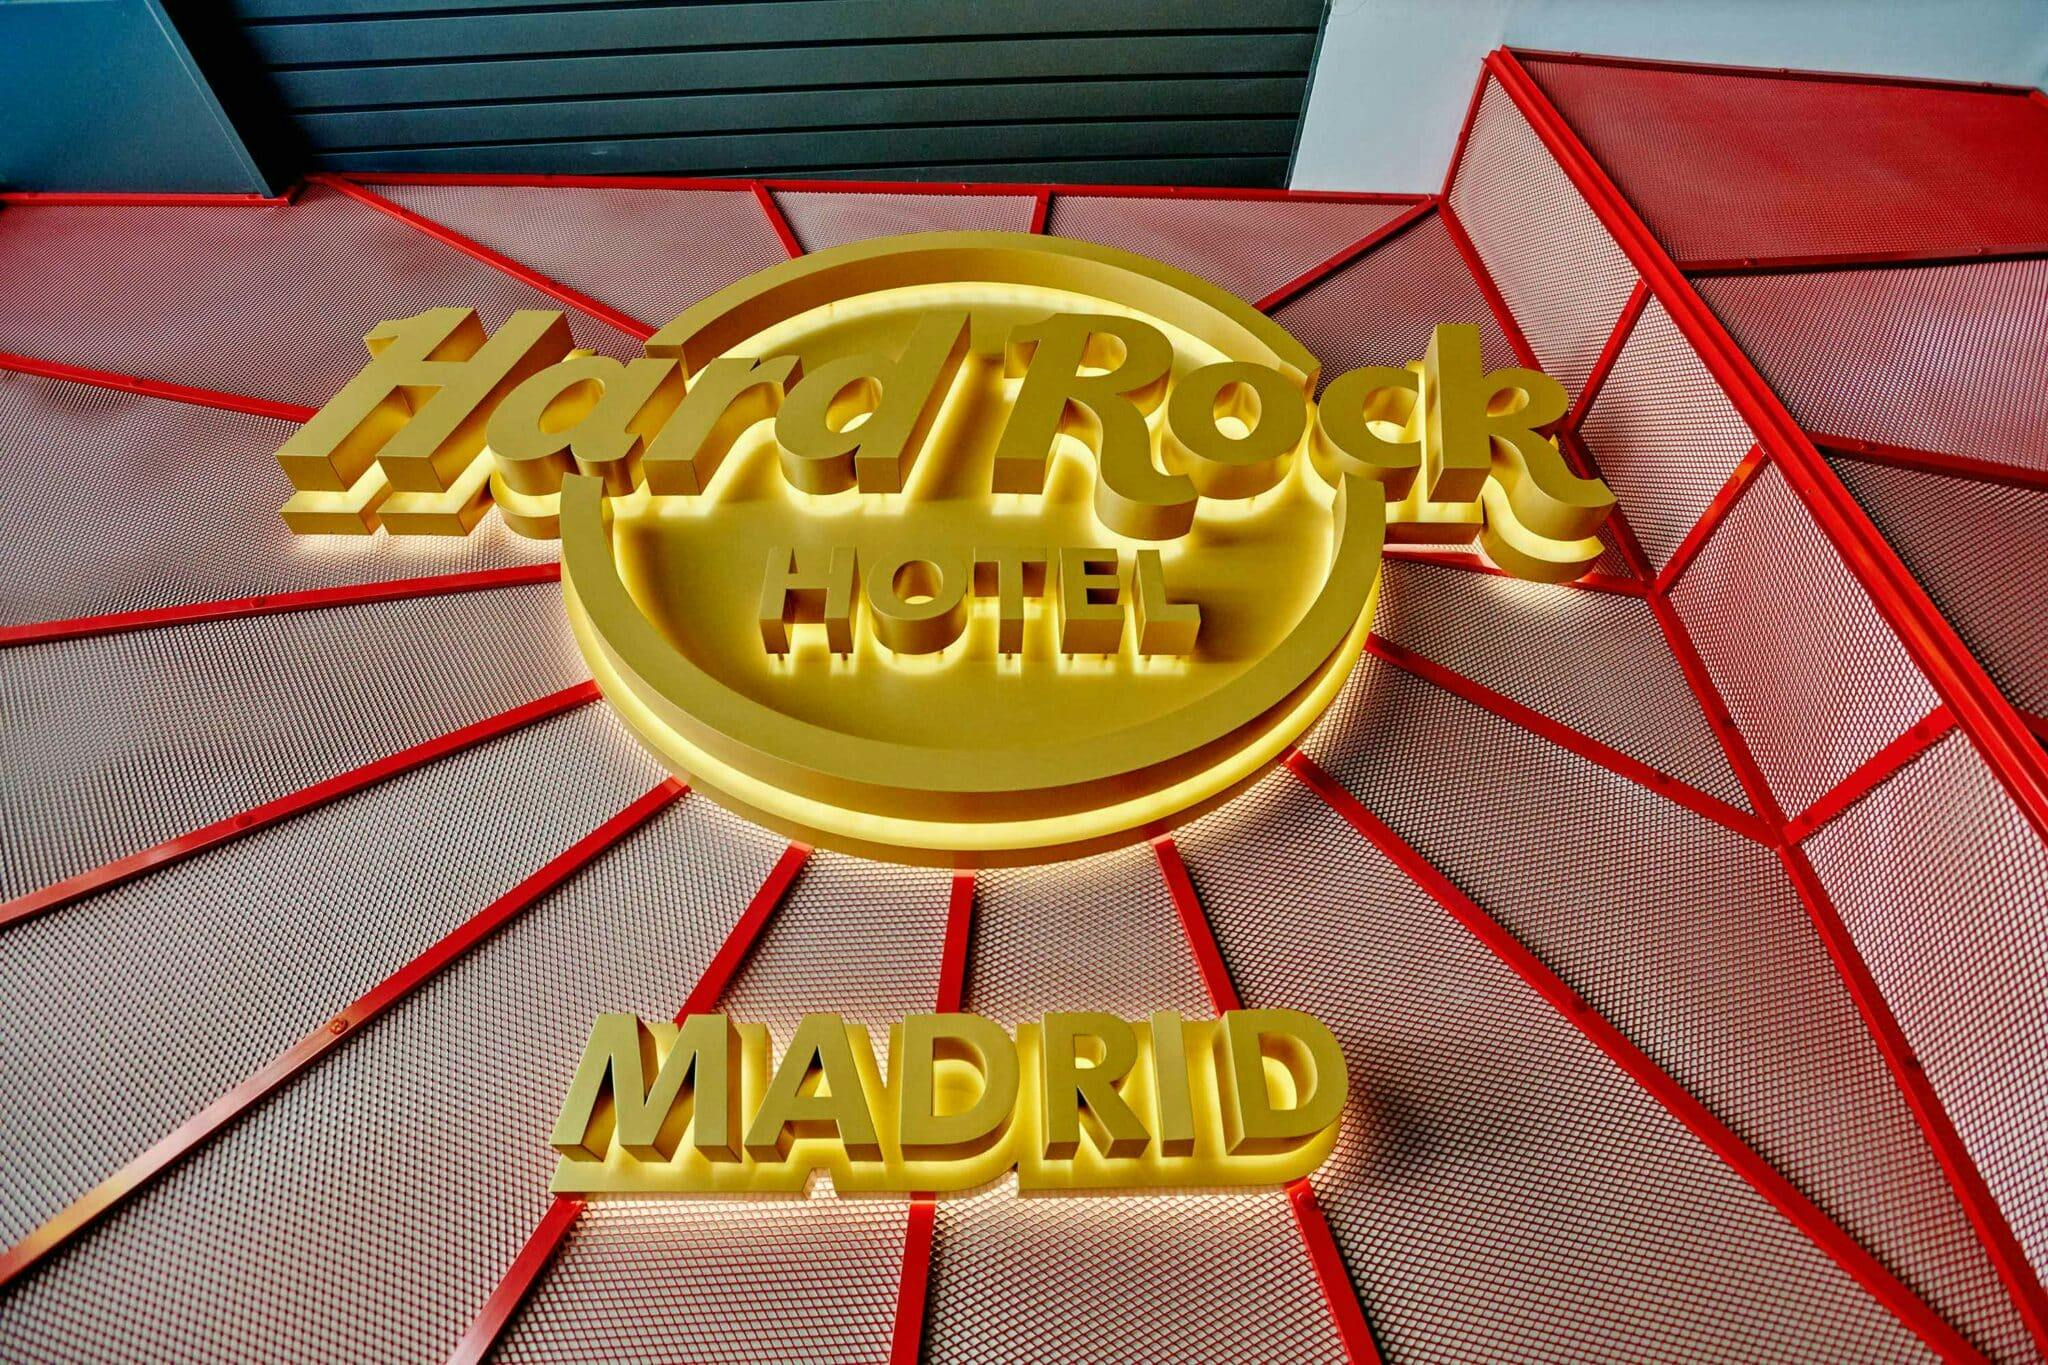 Imagen número 53 de la sección actual de Hard Rock Hotel Madrid